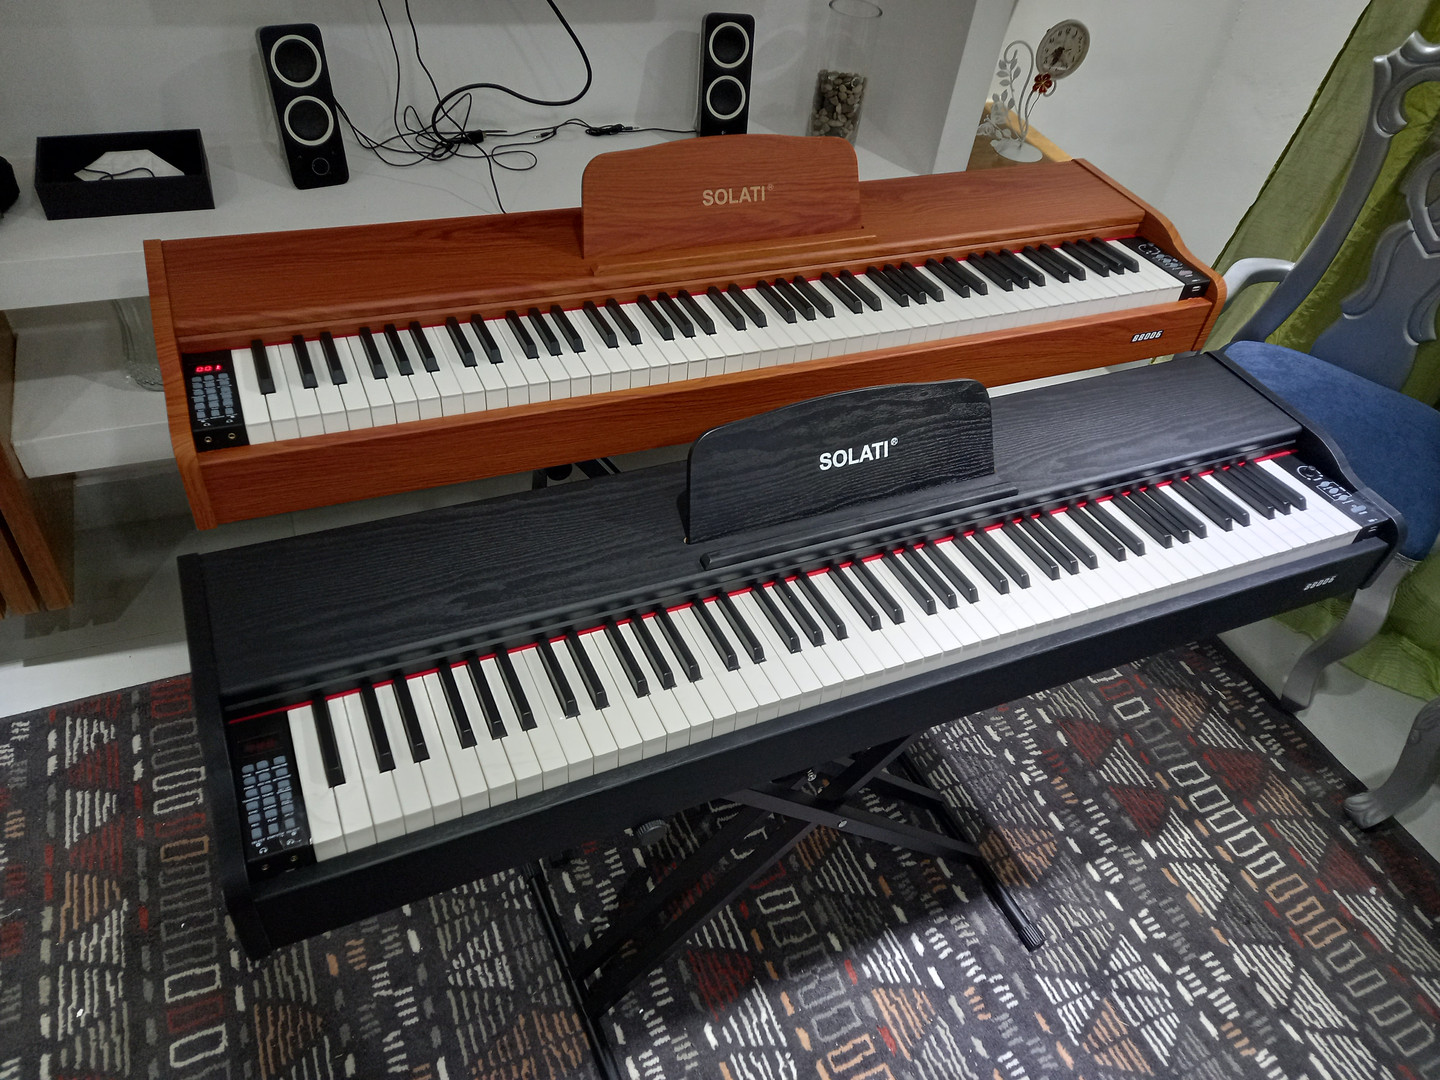 instrumentos musicales - PIANO 7 OCTAVAS 88 TECLAS DURAS USB 900 SONIDOS PUERTO MIDI 